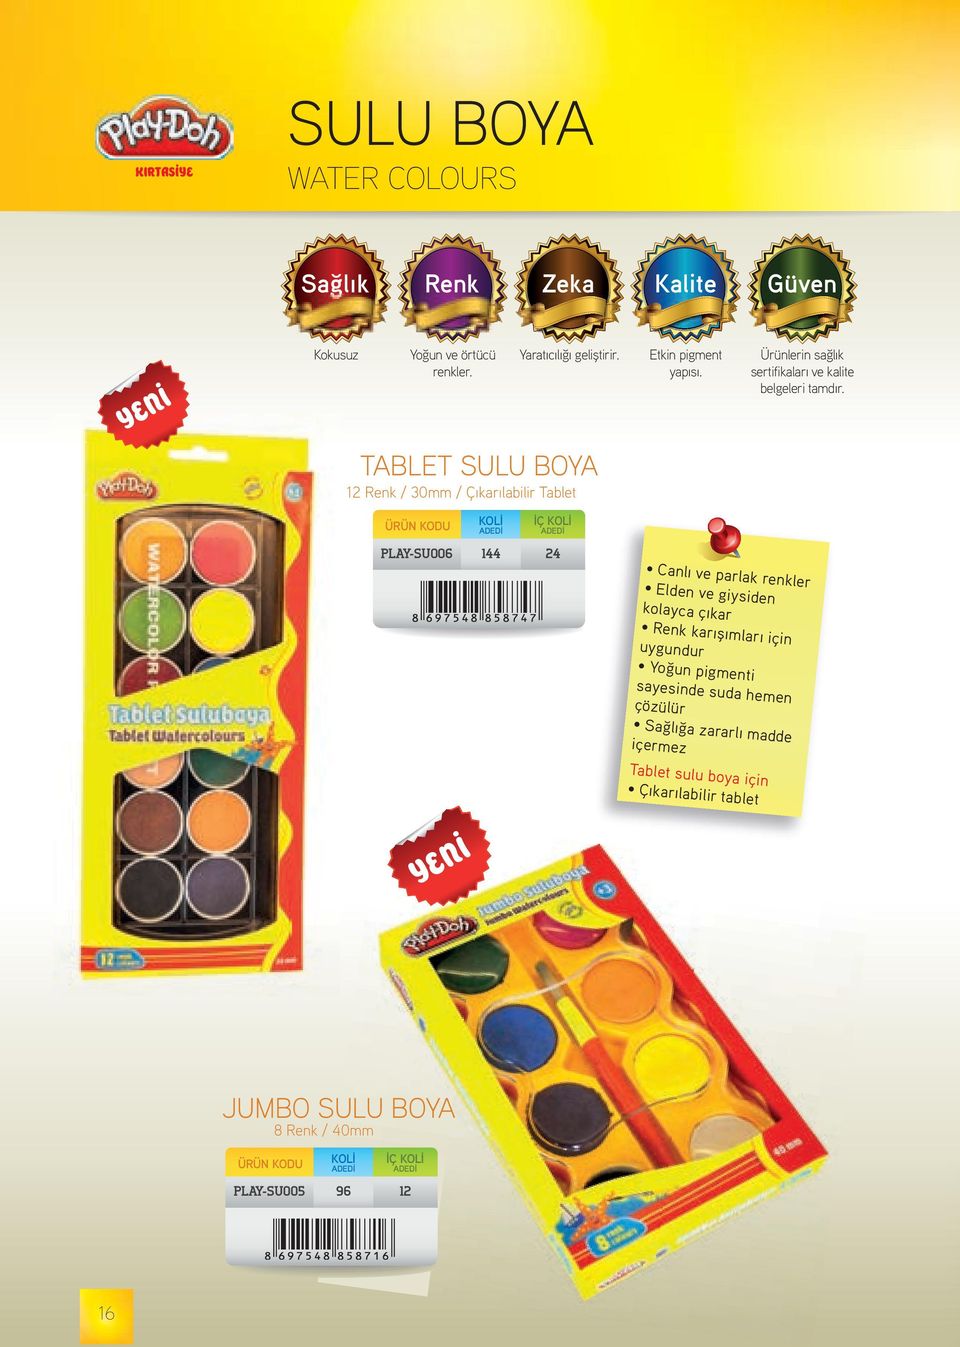 TABLET SULU BOYA 12 Renk / 30mm / Çıkarılabilir Tablet İÇ PLAY-SU006 144 24 Canlı ve parlak renkler Elden ve giysiden kolayca çıkar